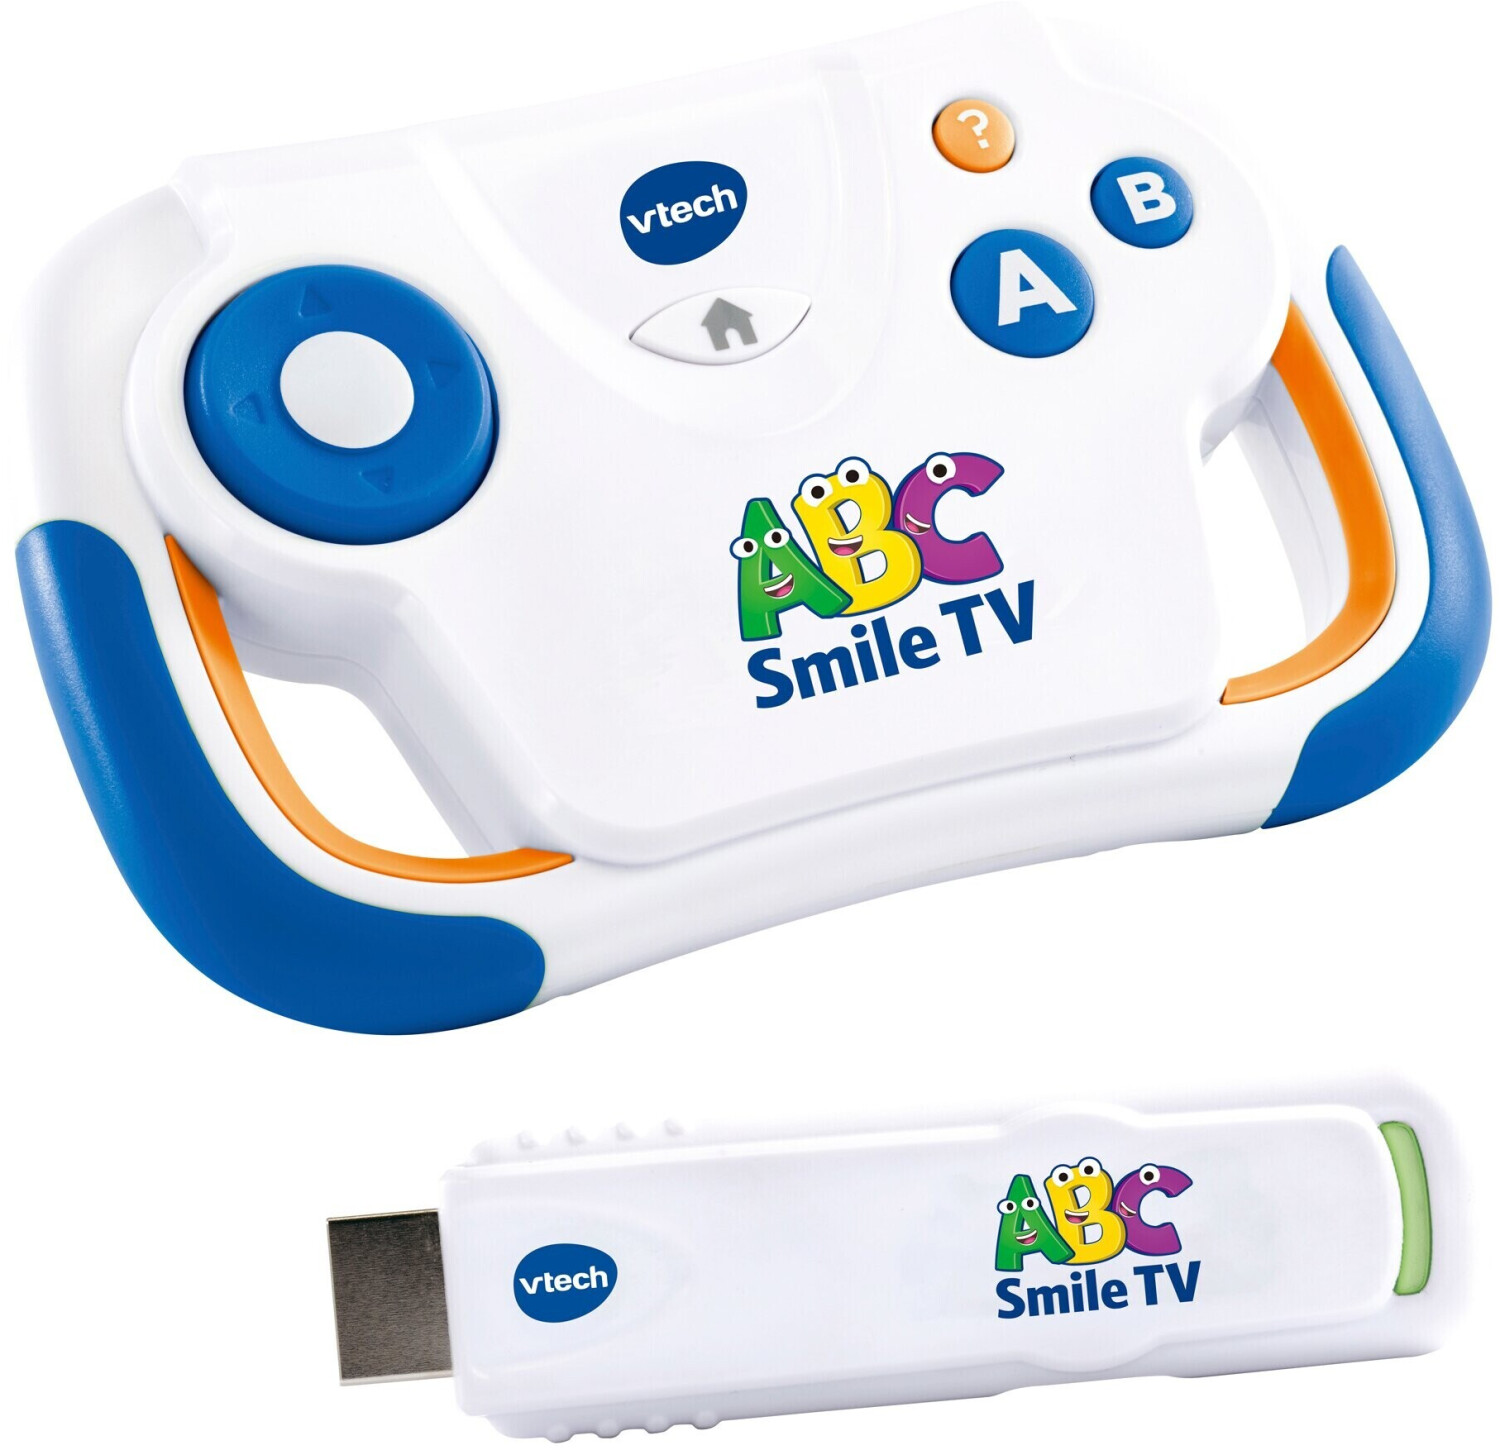 Vtech - pat patrouille - abc smile tv - ma premiere console tv éducative  VT3417766160058 - Conforama